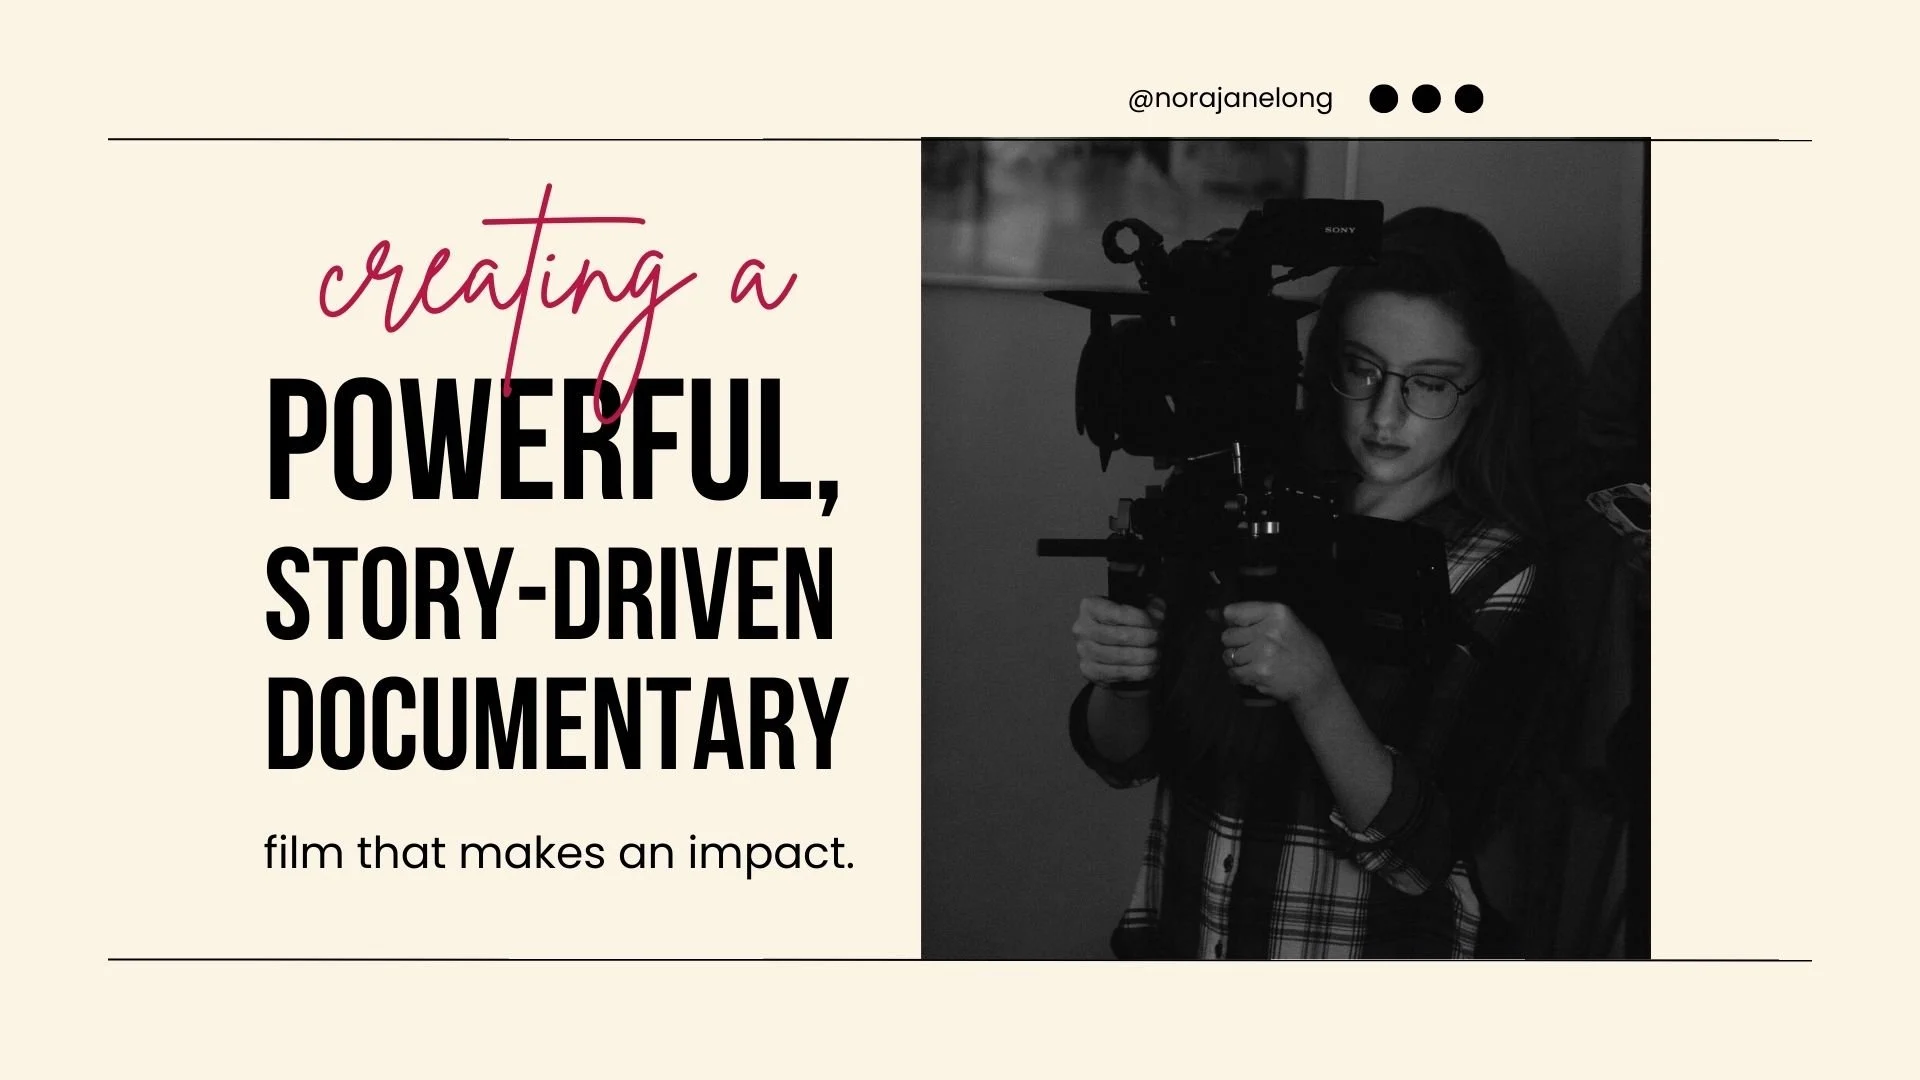 آموزش یک فیلم مستند قدرتمند و داستان محور بسازید که تأثیرگذار باشد